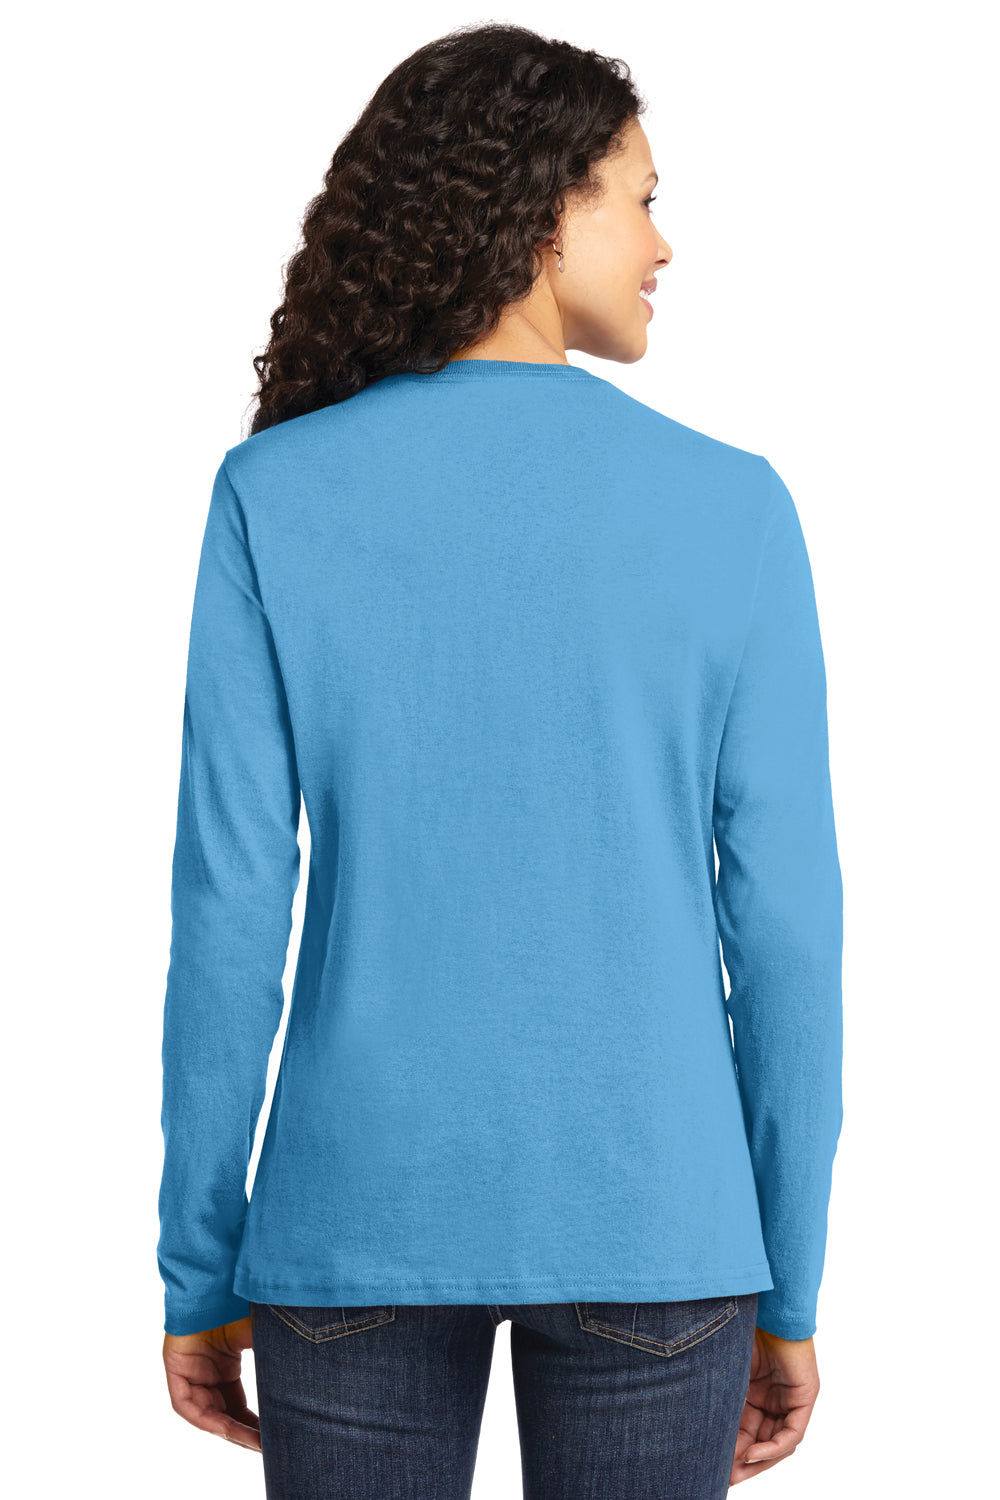 Port & Company LPC54LS Womens Core Long Sleeve Crewneck T-Shirt Aqua Blue Back